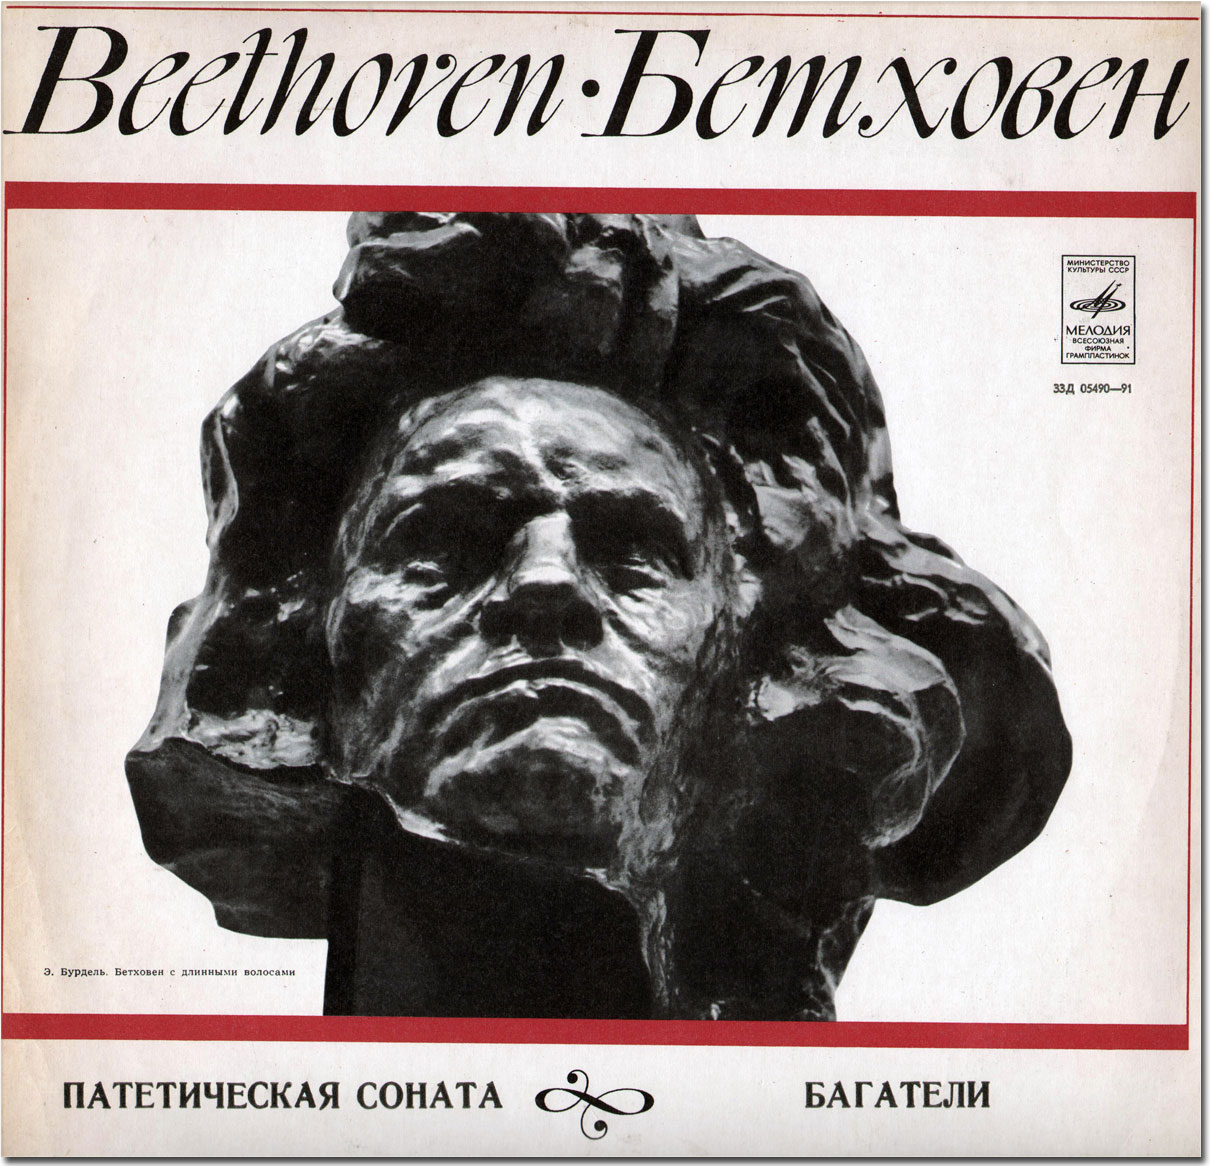 Л. БЕТХОВЕН (1770–1827): Соната №8 для ф-но «Патетическая» / Багатели (С. Рихтер, ф-но)